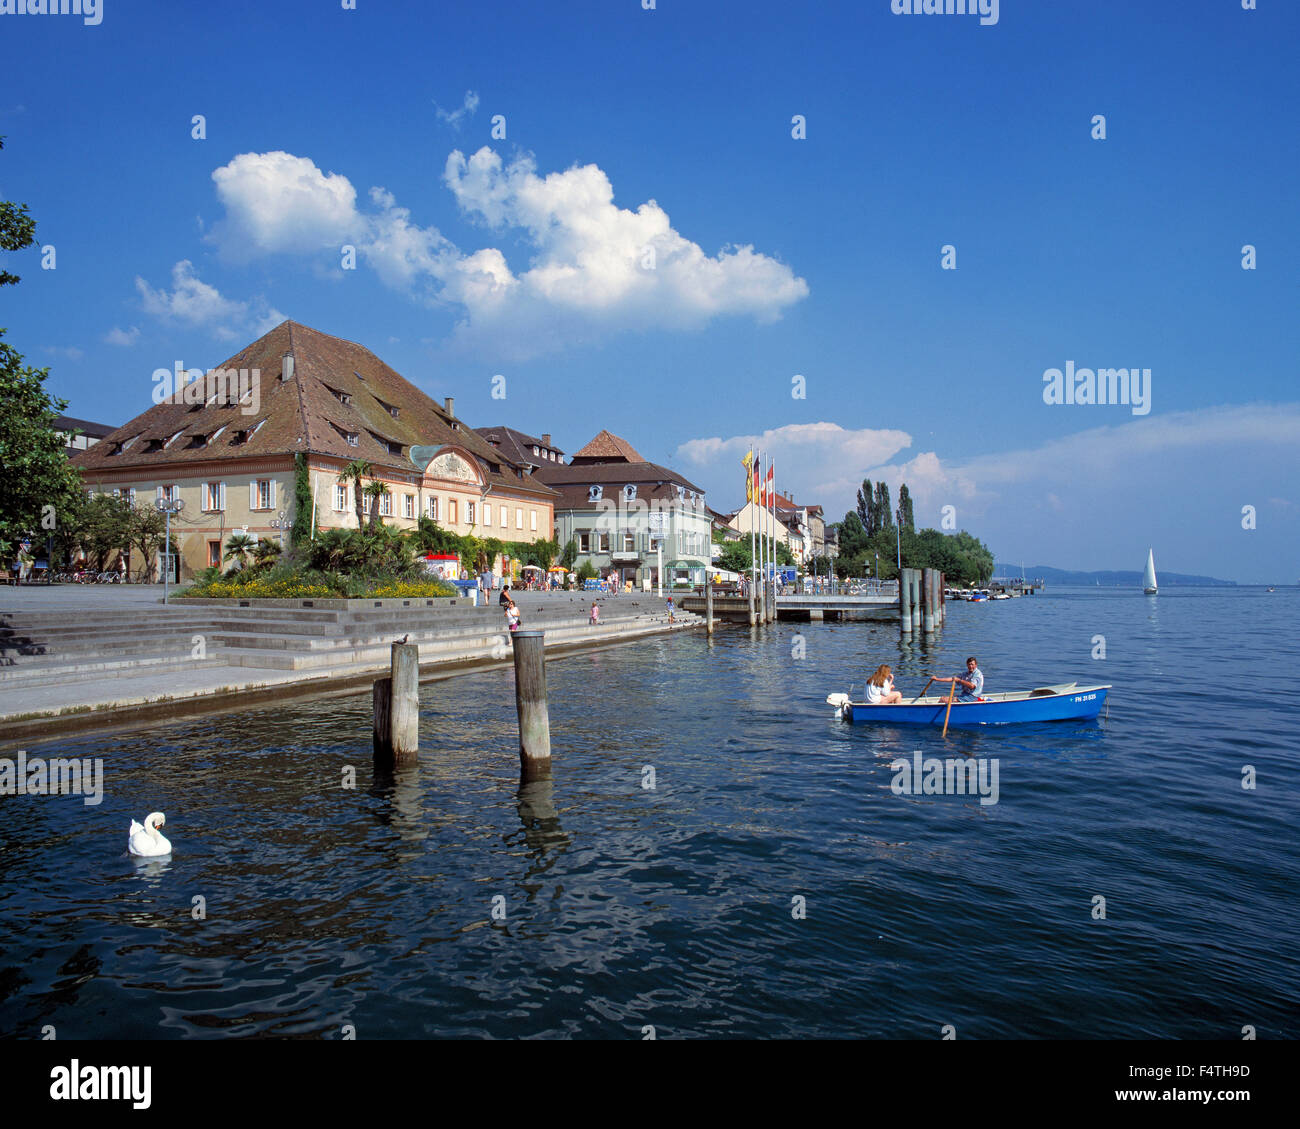 Germany, Europe, Baden-Wurttemberg, Ueberlingen, lake shore promenade, grain store, Greth, Linzgau, Lake of Constance, oar boat, Stock Photo